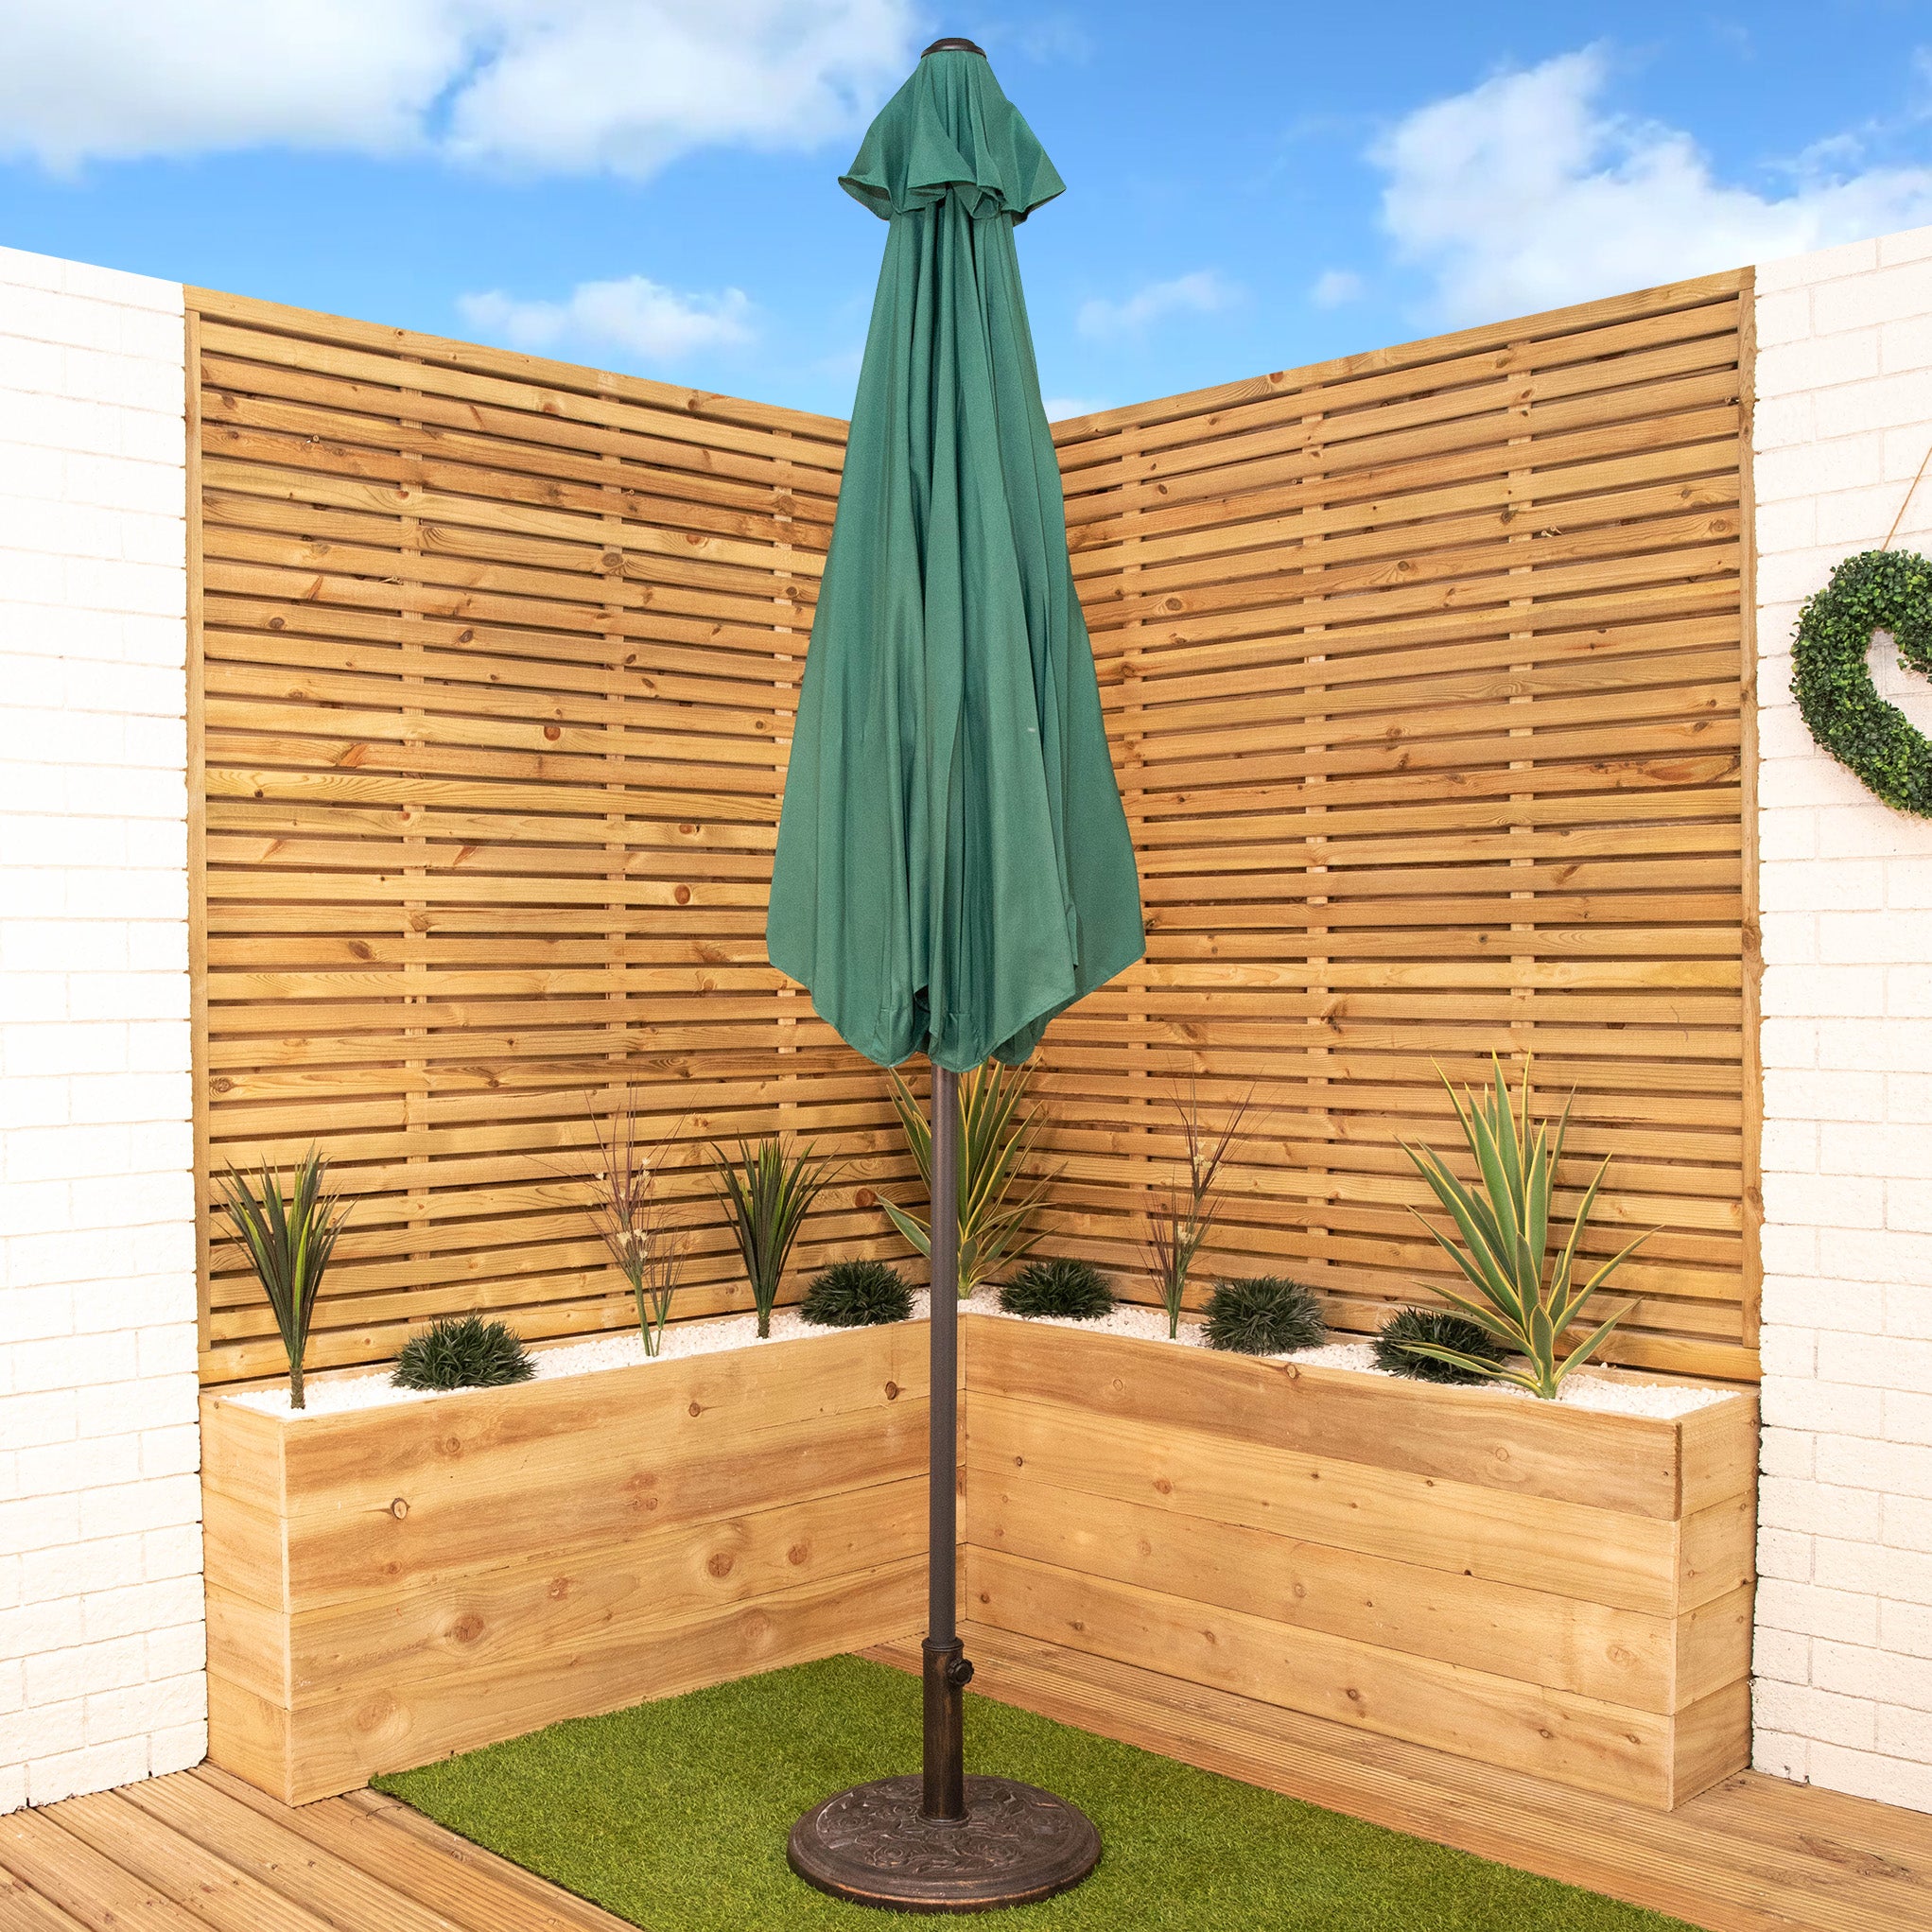 2.7m Aluminium Garden Patio Sun Shade Parasol with Crank Handle in Green